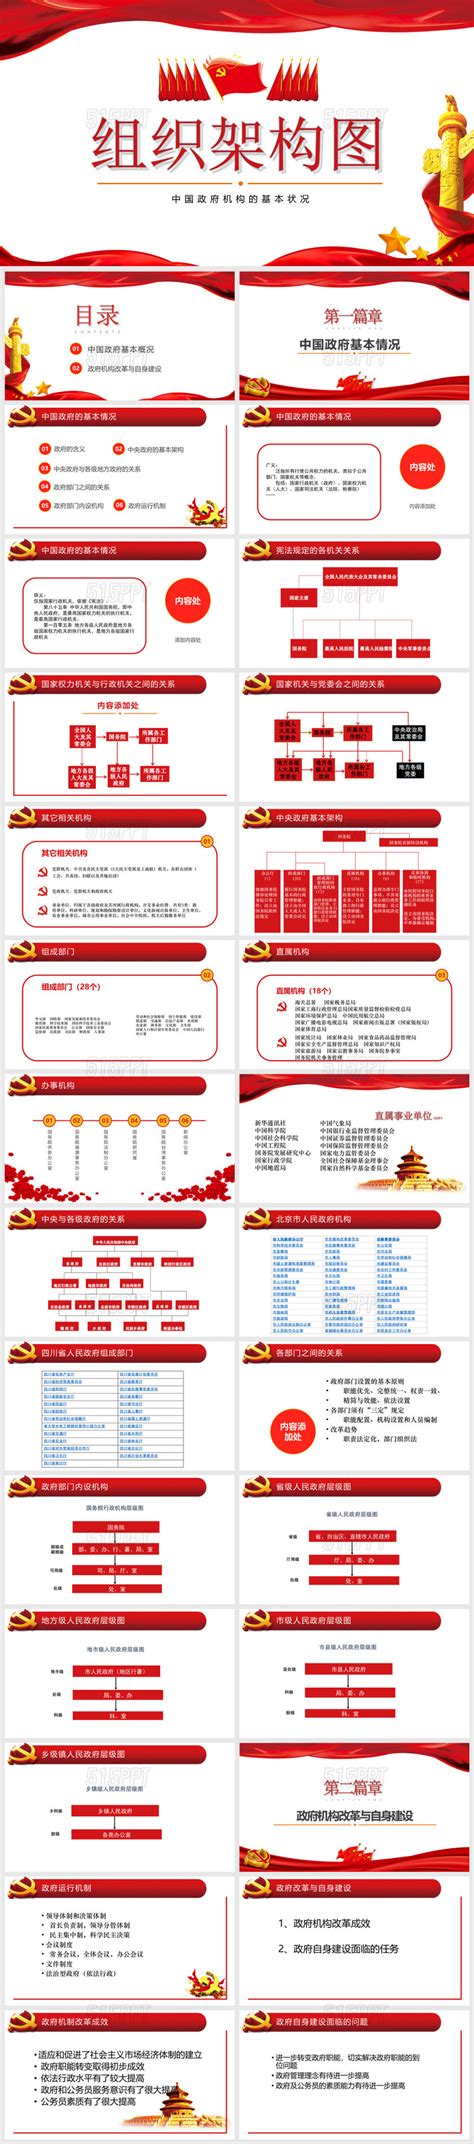 组织架构图之中国政府机构的基本情况——PPT模板-515PPT